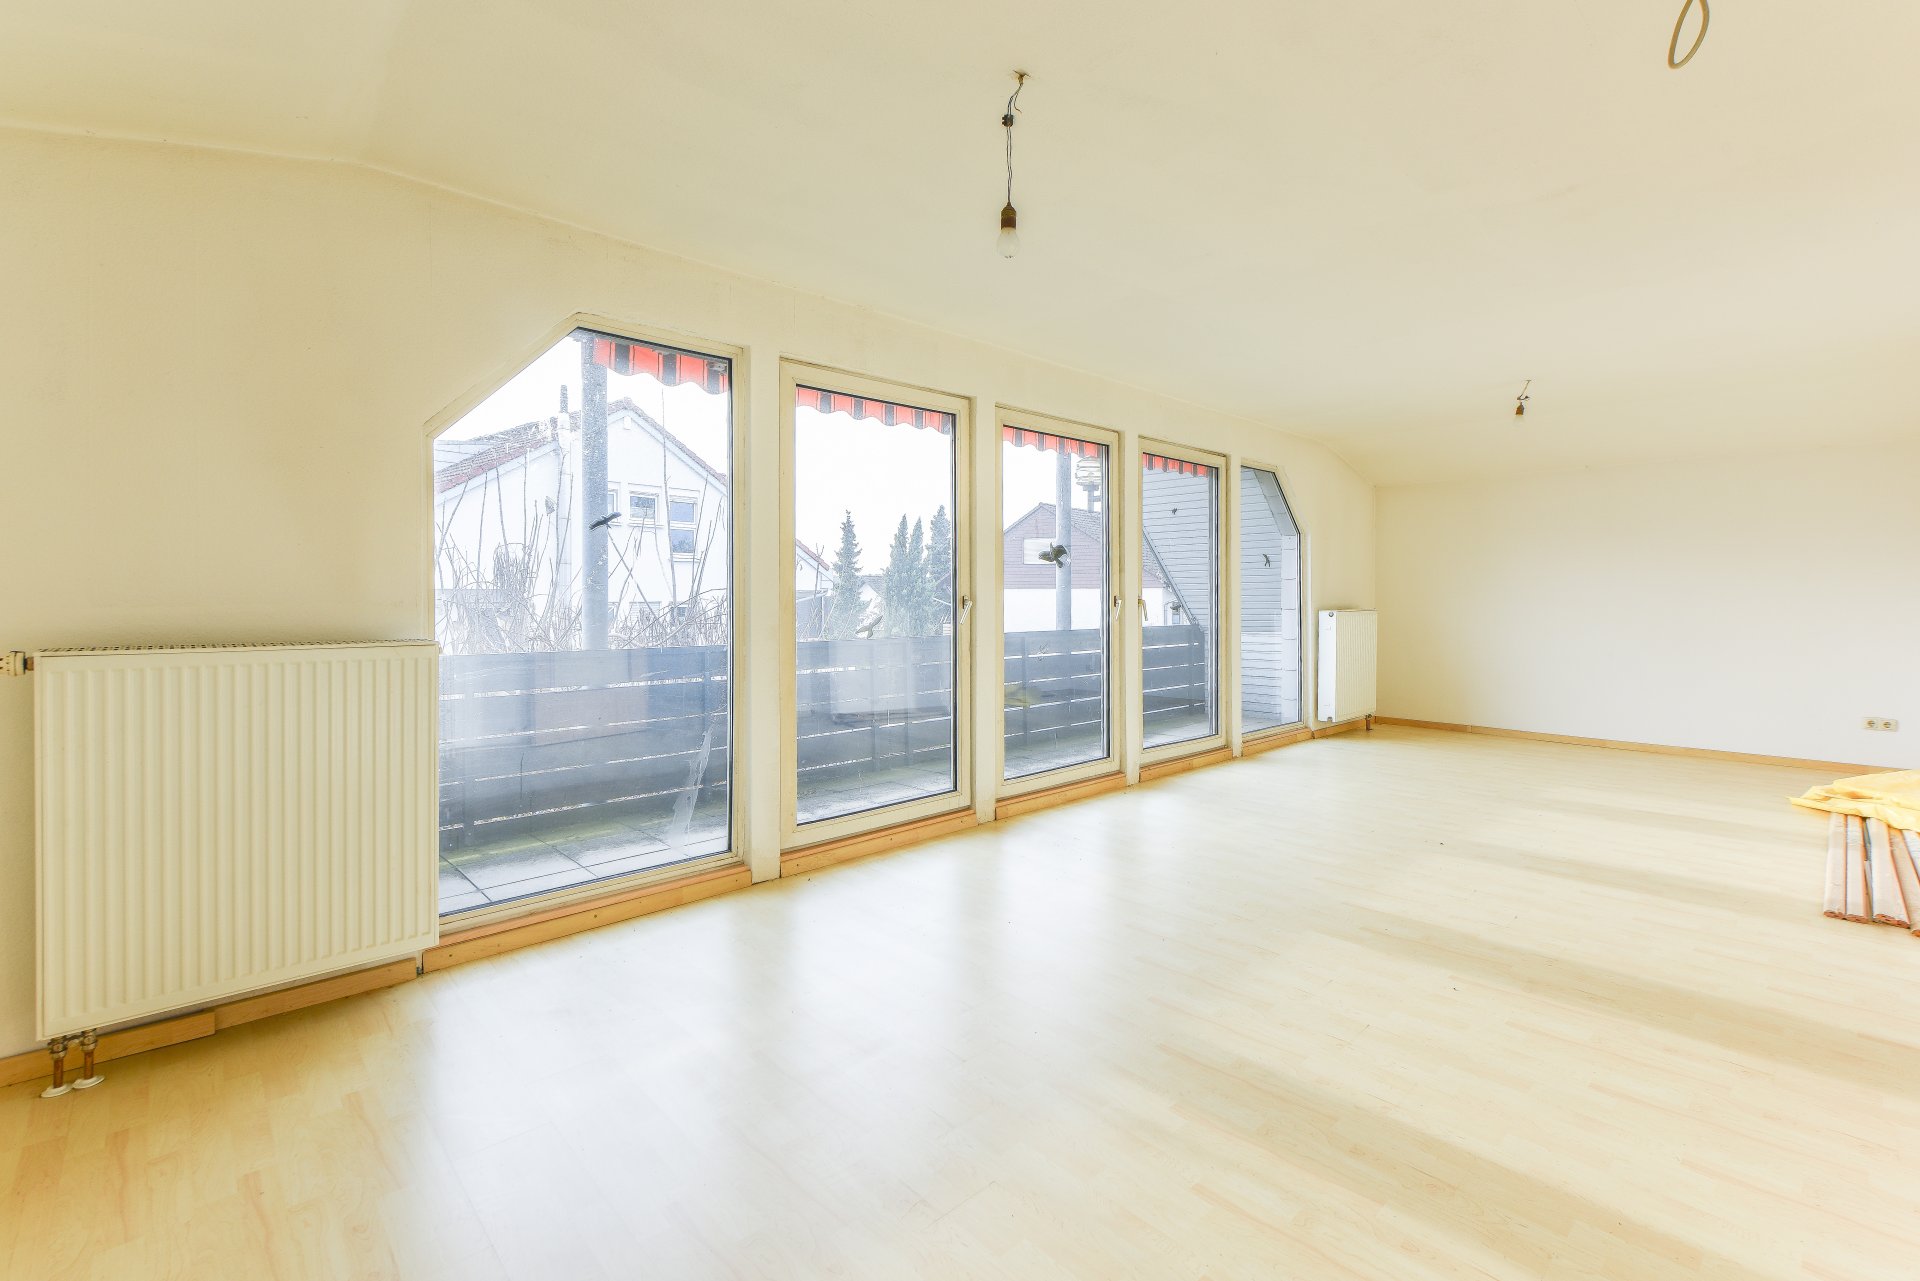 Viele bodentiefe Fenster und Fenstertüren lassen viel Licht hinein - Oliver Reifferscheid - Immobilienmakler Darmstadt